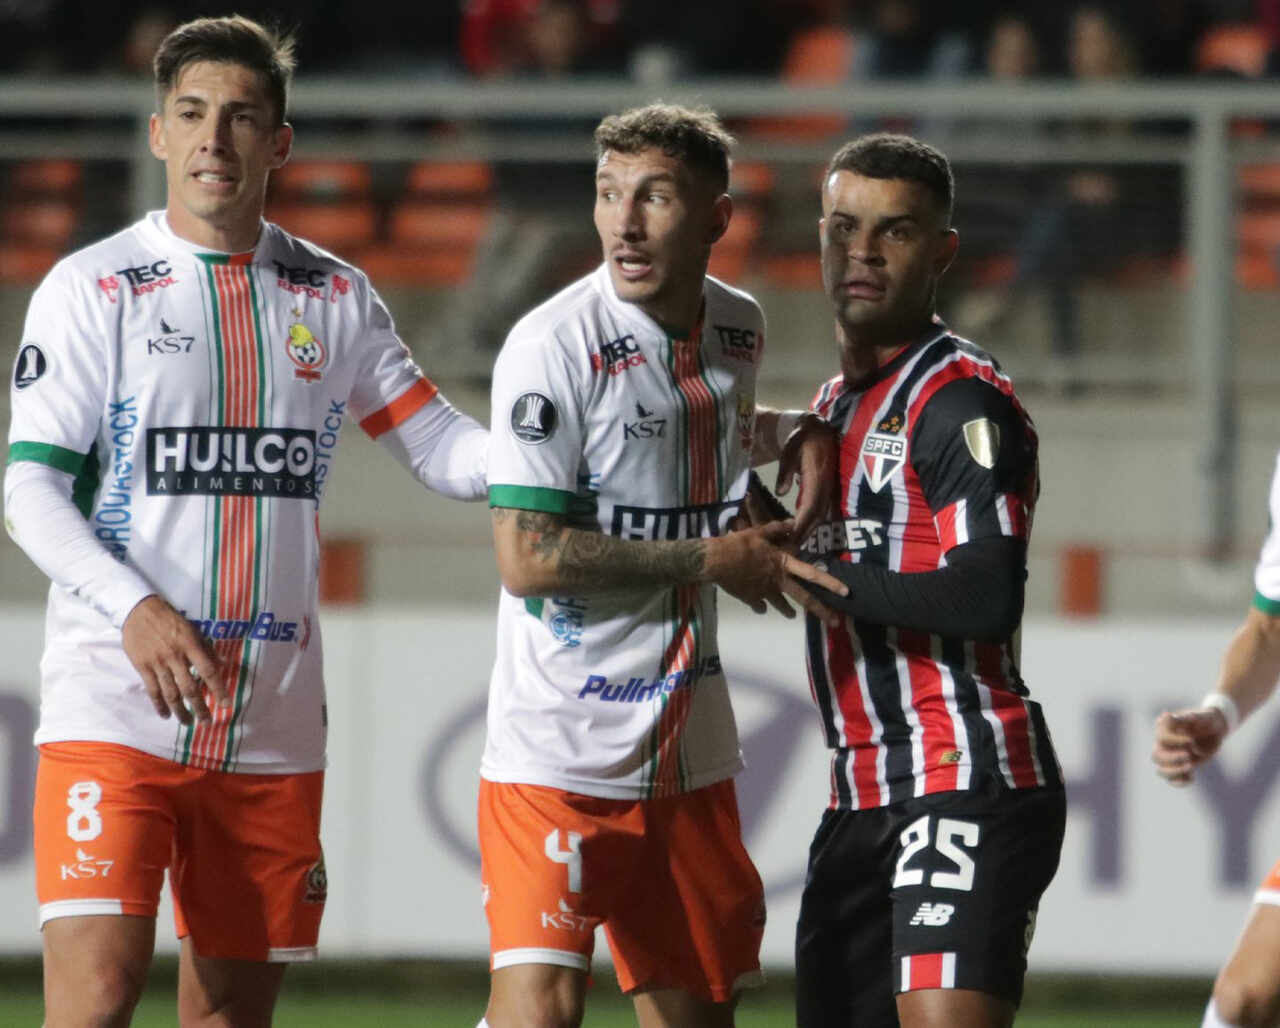 Atuações do São Paulo contra o Cobresal: Zubeldía lê bem o jogo e muda o time com perfeição